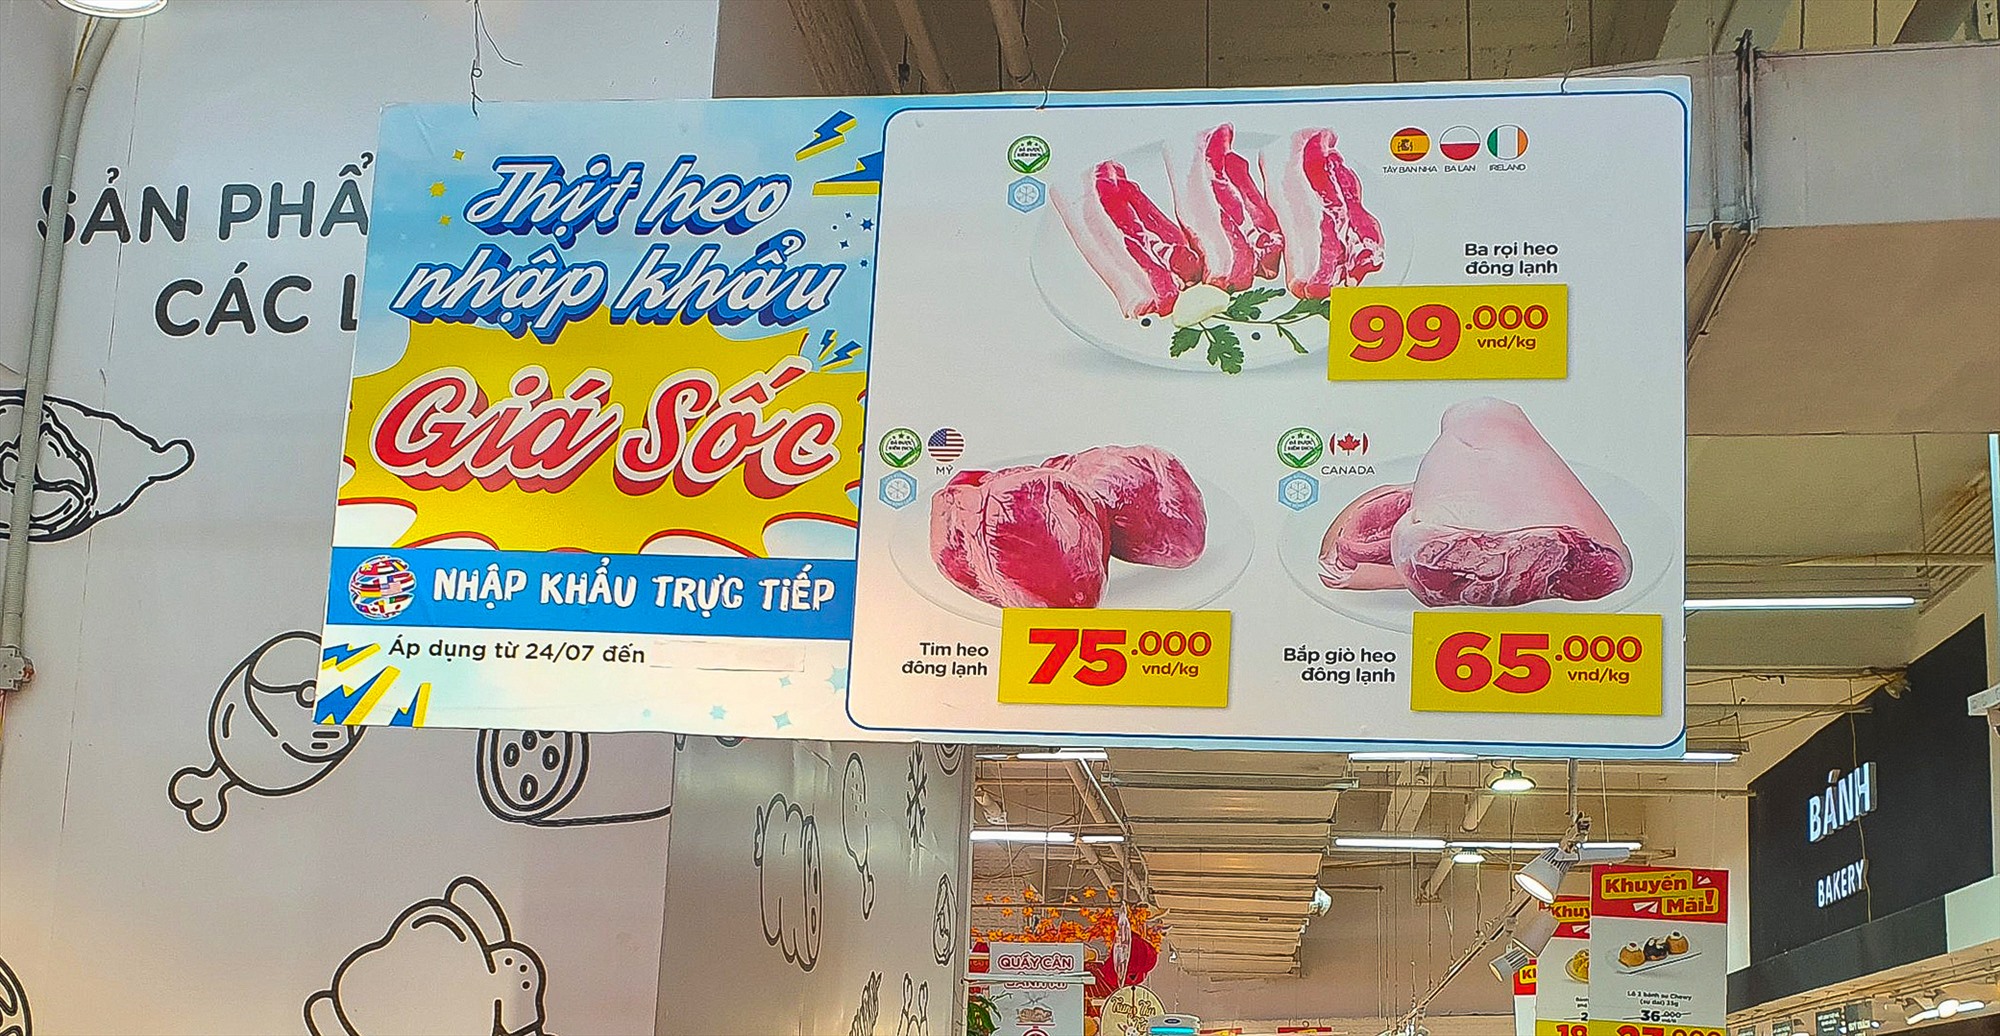 Giá thịt lợn đông lạnh đang được bán với mức giá khá thấp. Ảnh: Phan Anh